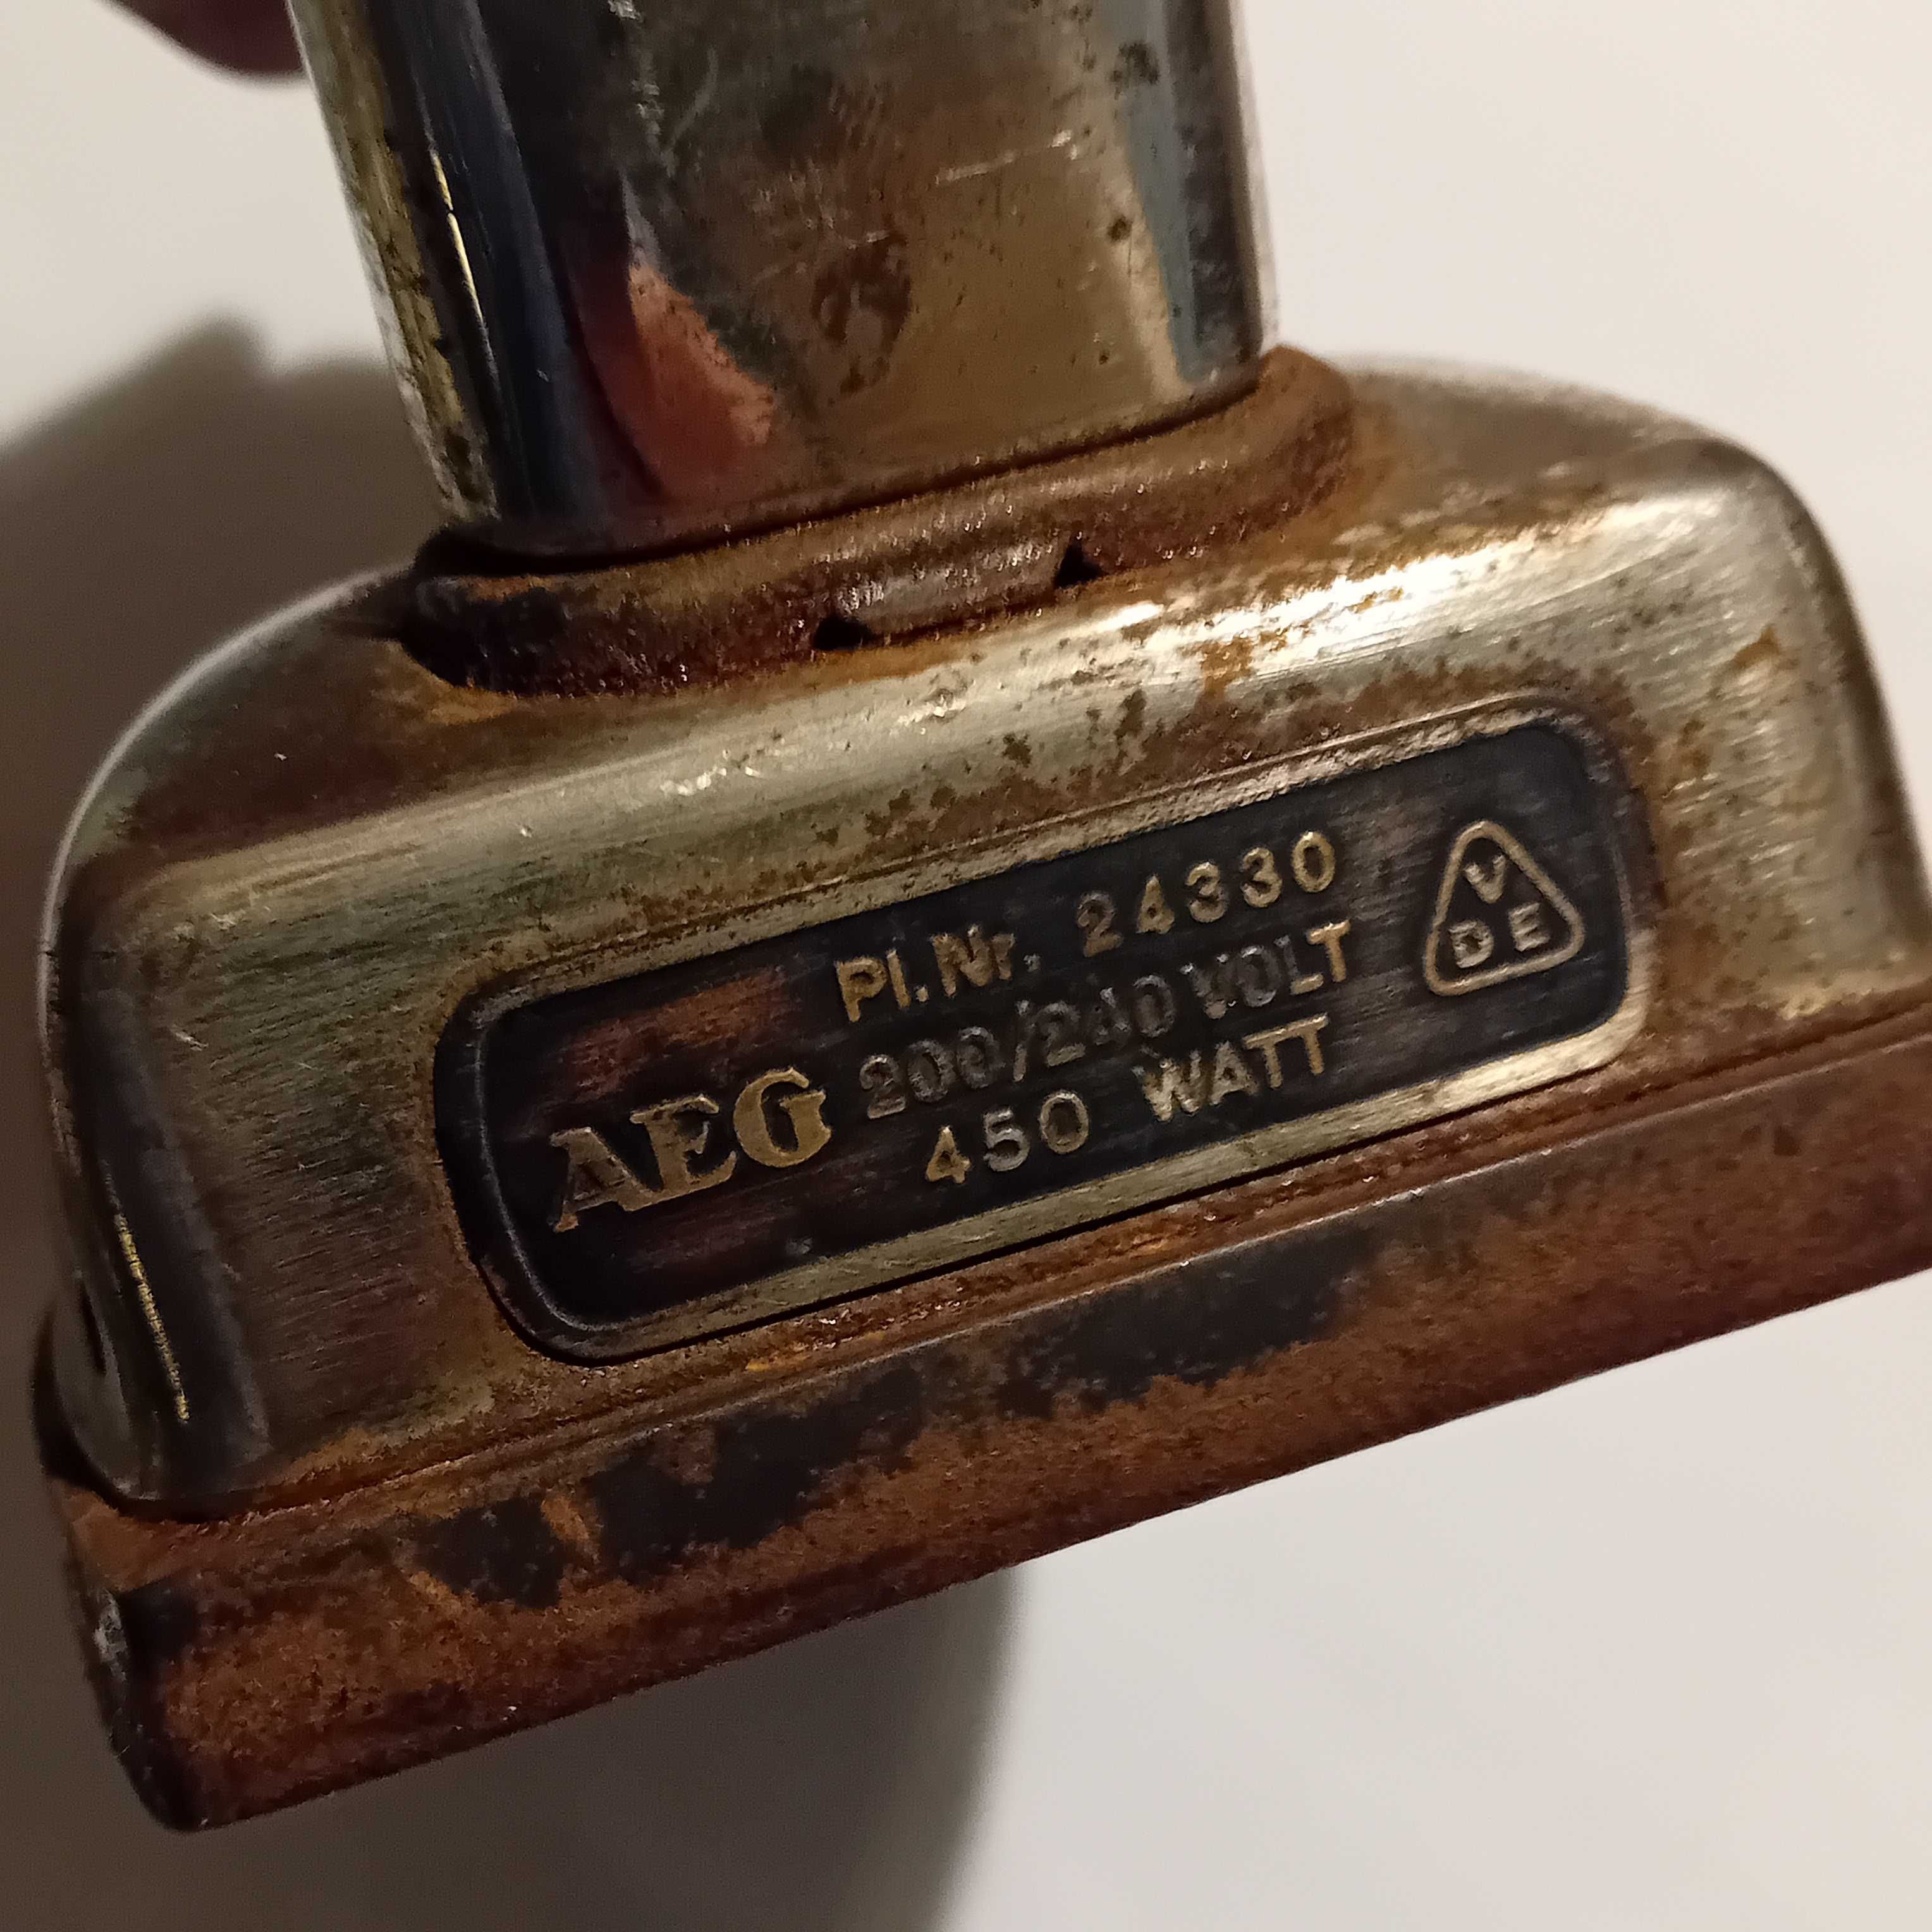 Stare żelazko elektryczne AEG PI.Nr 24330. 450 W.